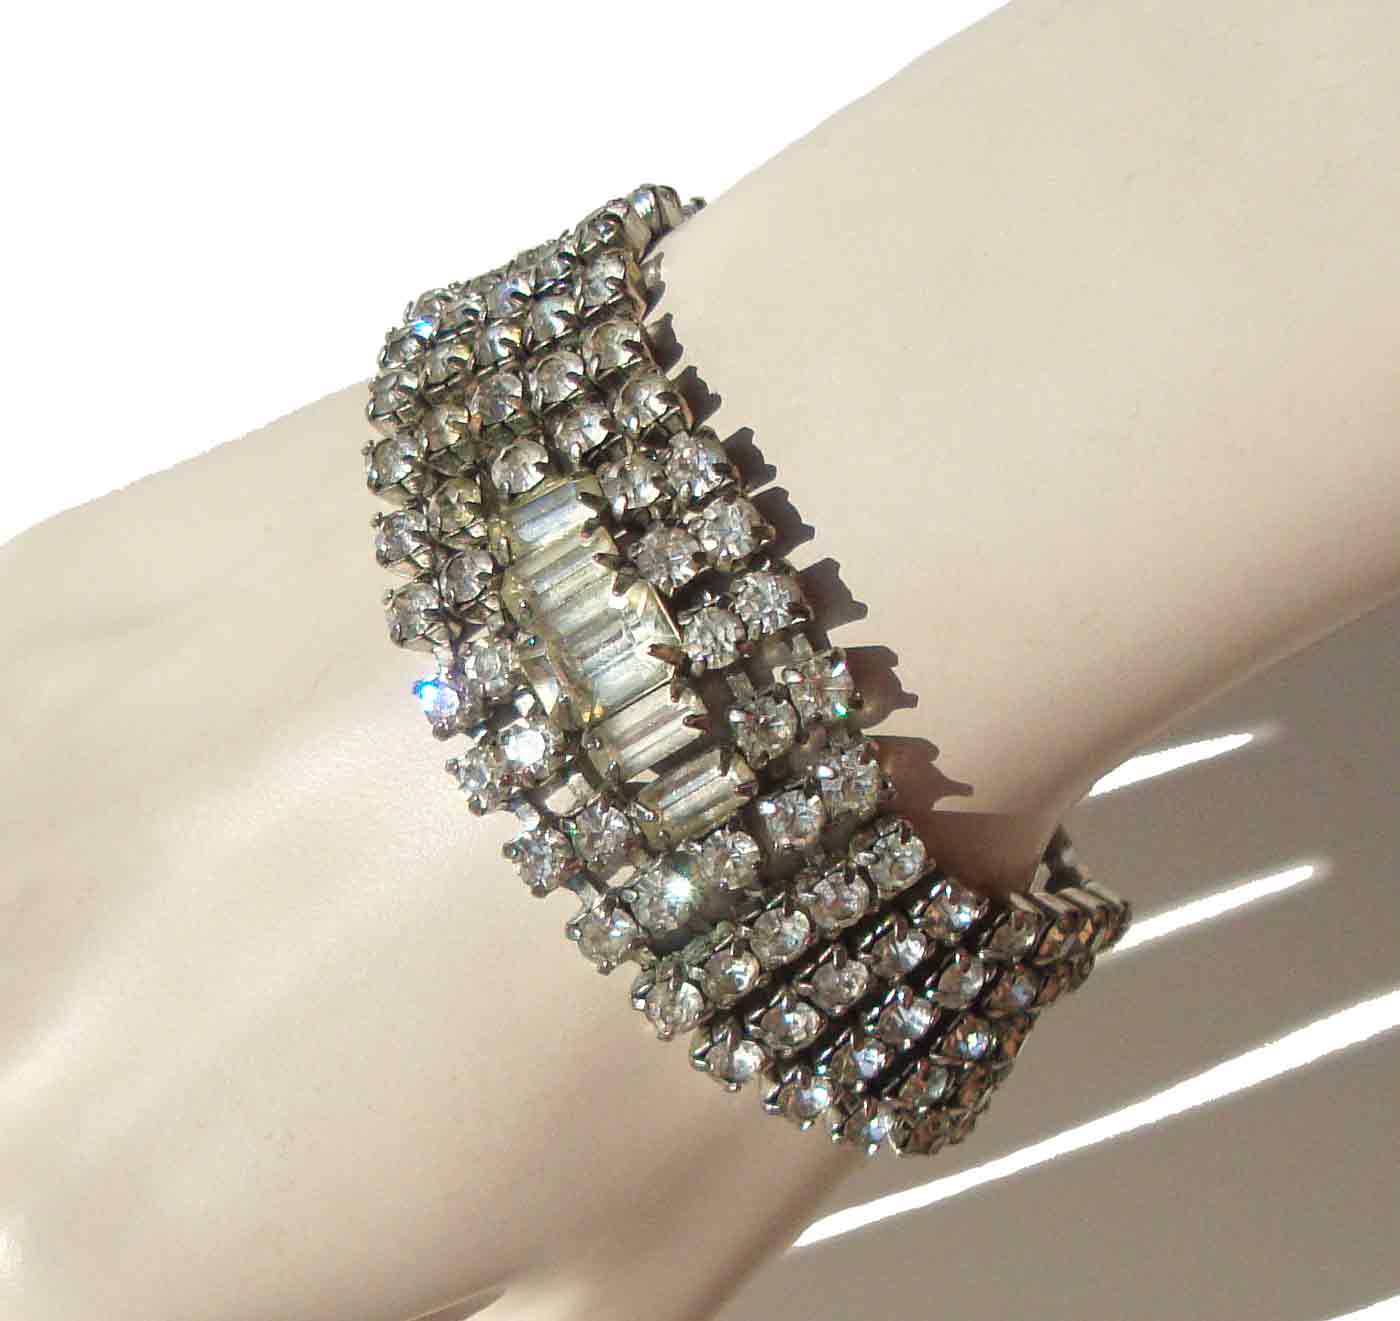 Clear rhinestone cuff style bracelet flexible size 1950s 1960s silver metal